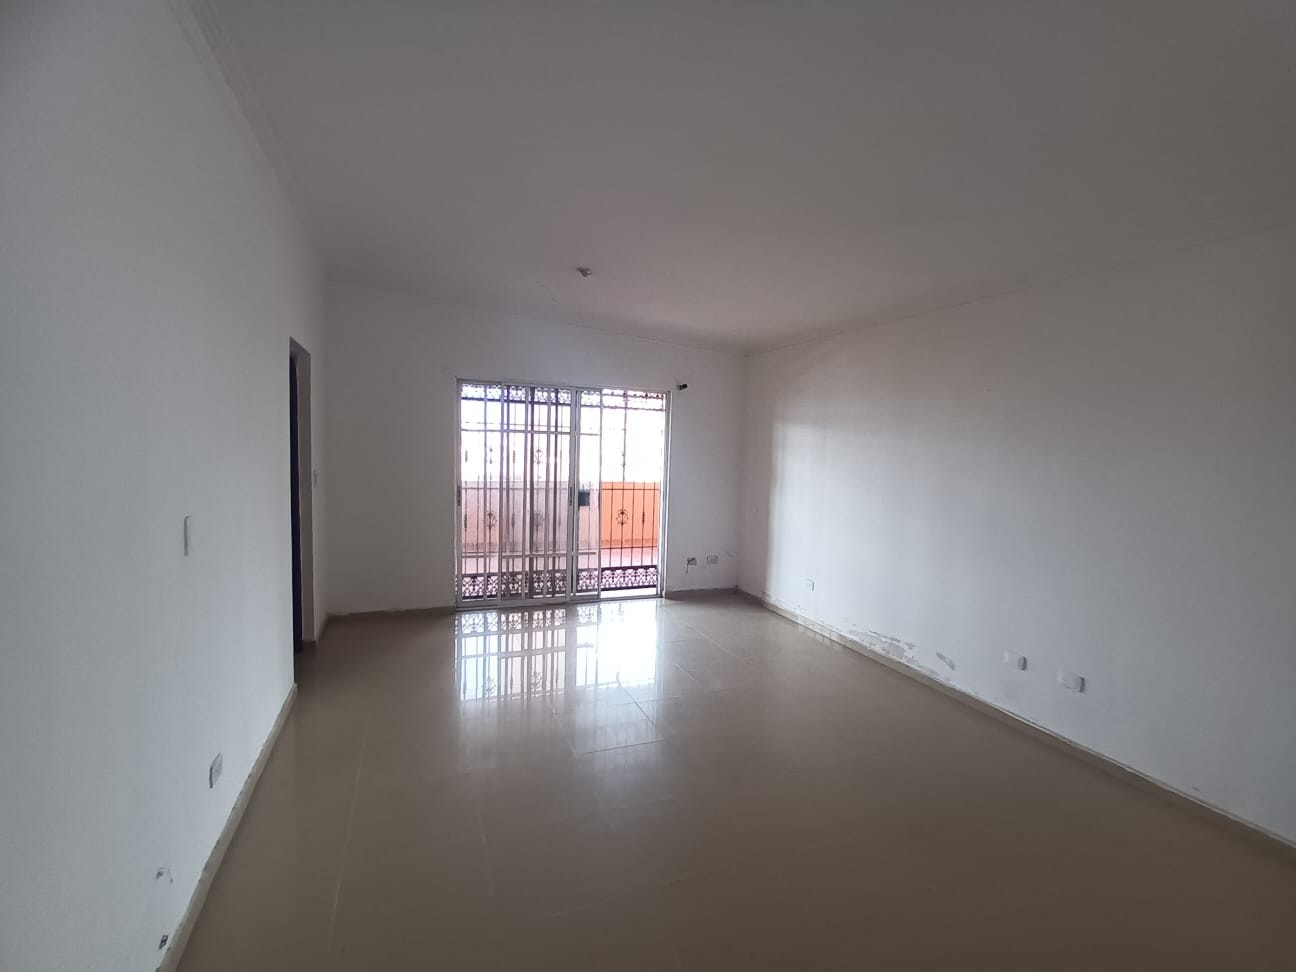 apartamentos - Residencial Kiara Mariel IV en Mirador Norte.

190 mts2.

APARTAMENTO 502 (5B),  4